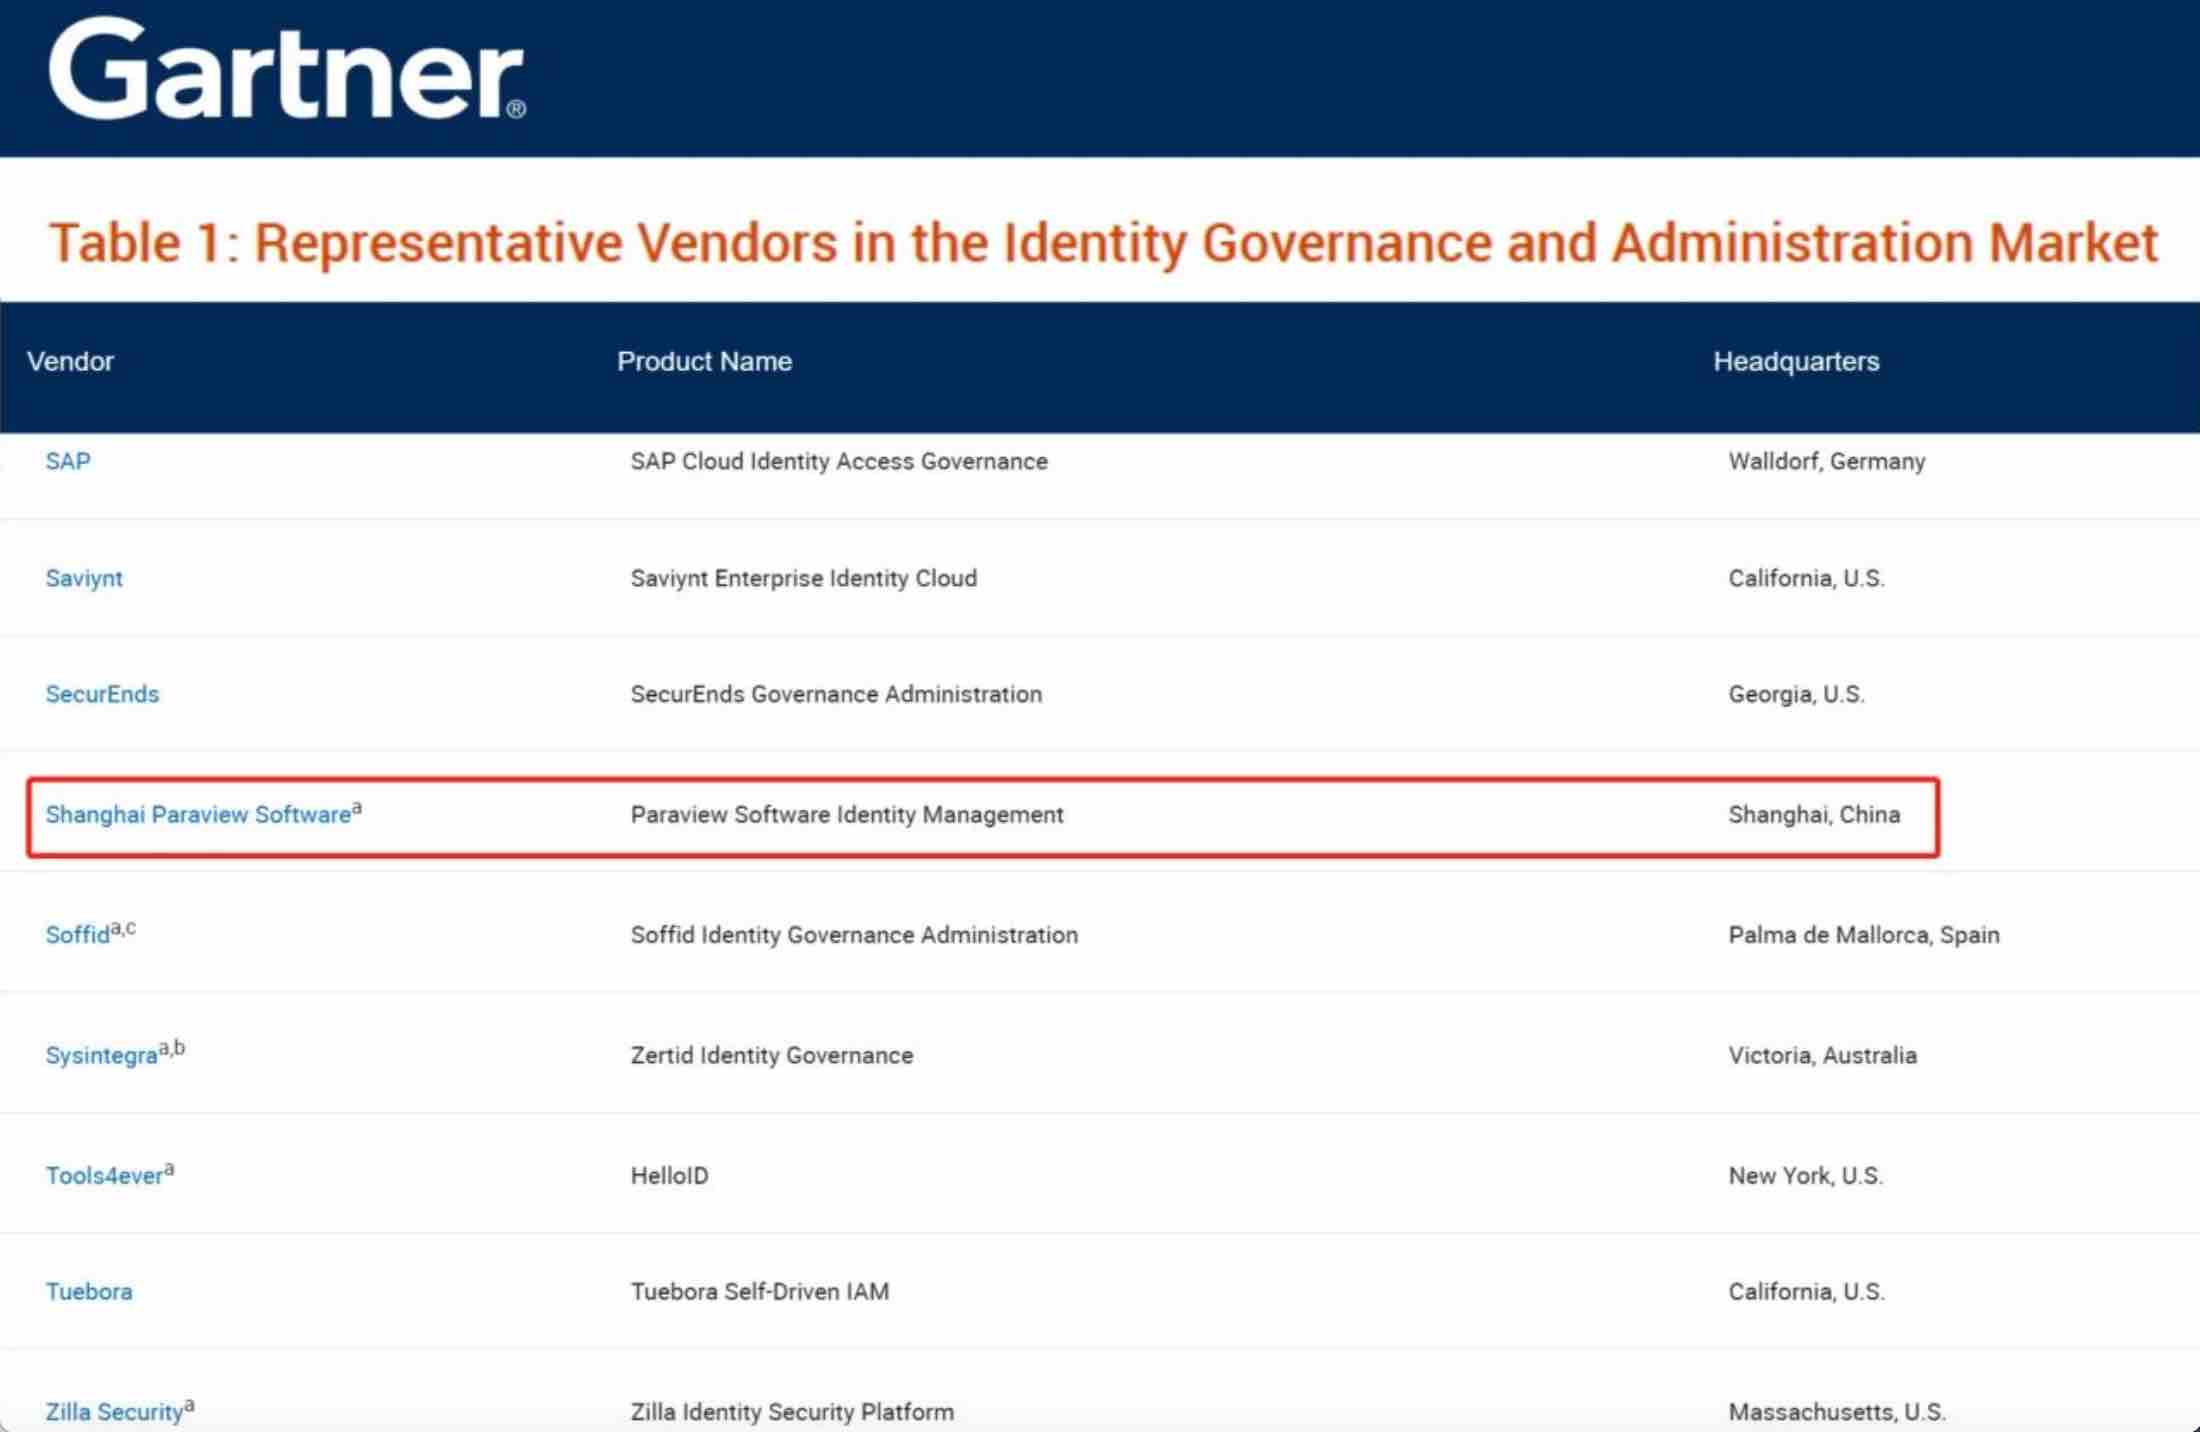 权威认可！派拉软件连续入选Gartner《身份治理与管理市场指南》全球代表厂商